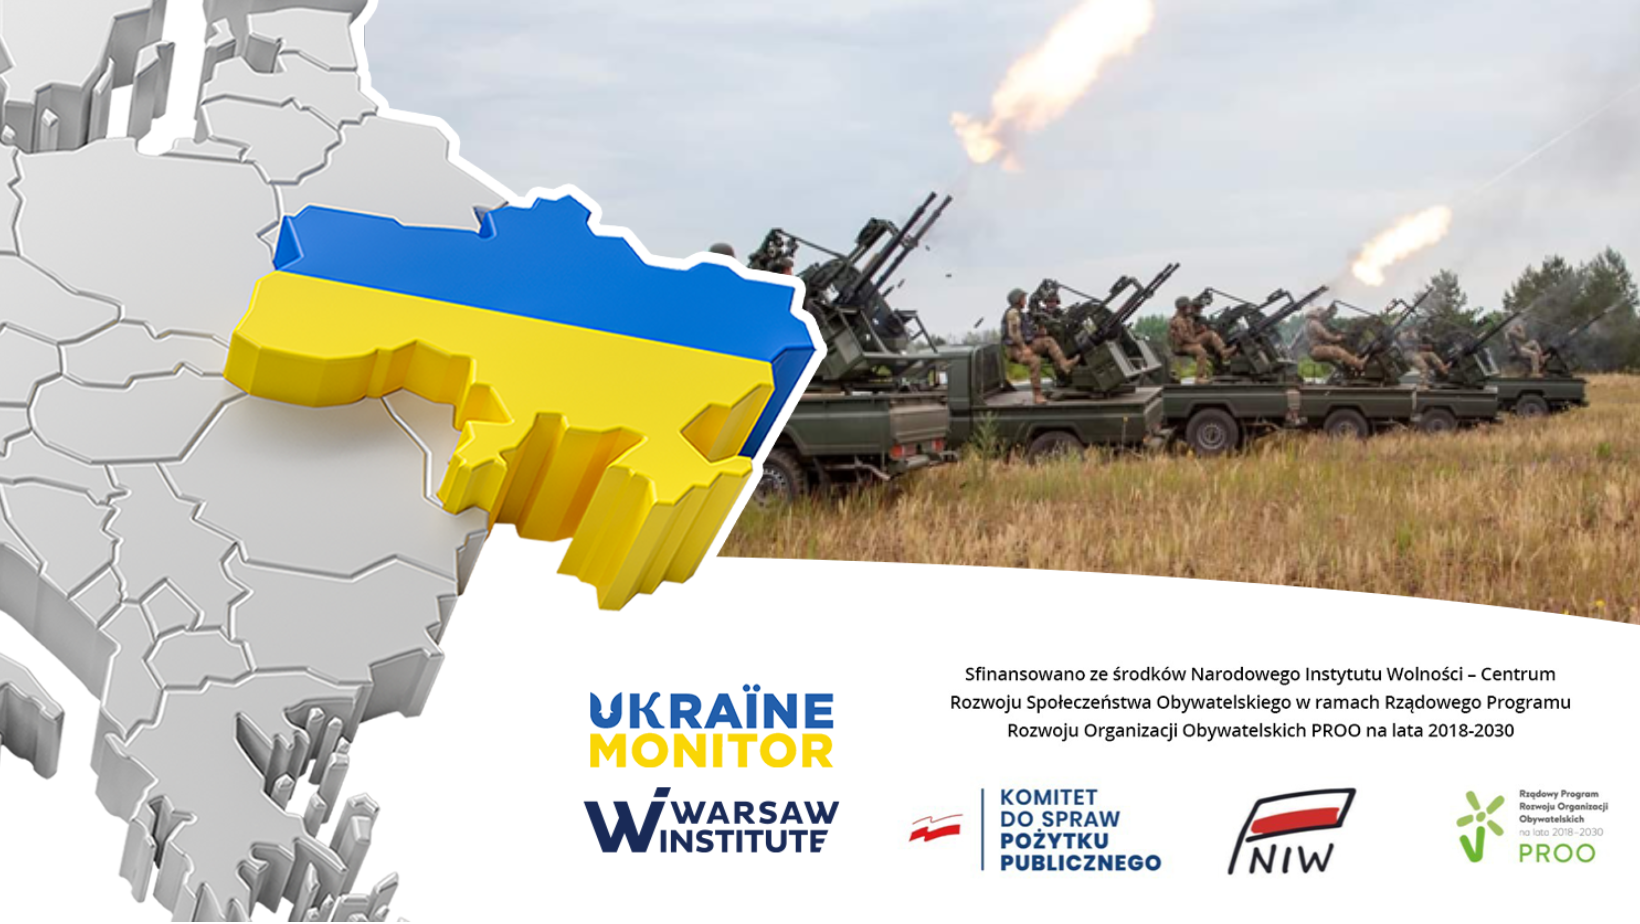 A Prelude to Massive Ukrainian Counteroffensive?